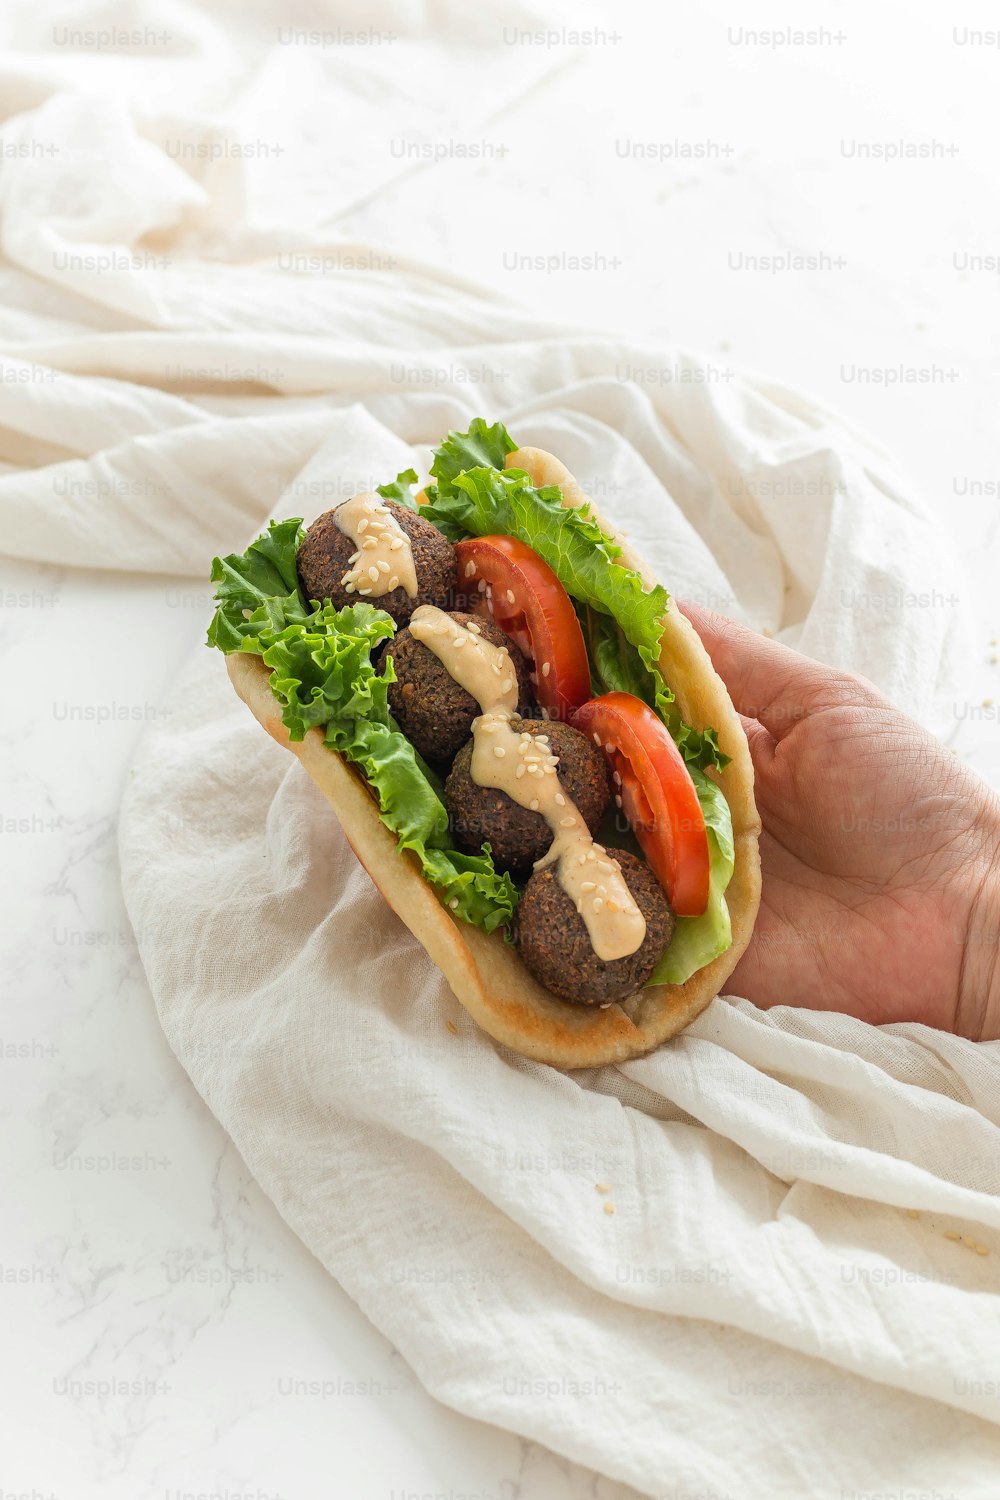 고기, 양상추, 토마토가 들어간 샌드위치를 들고 있는 손